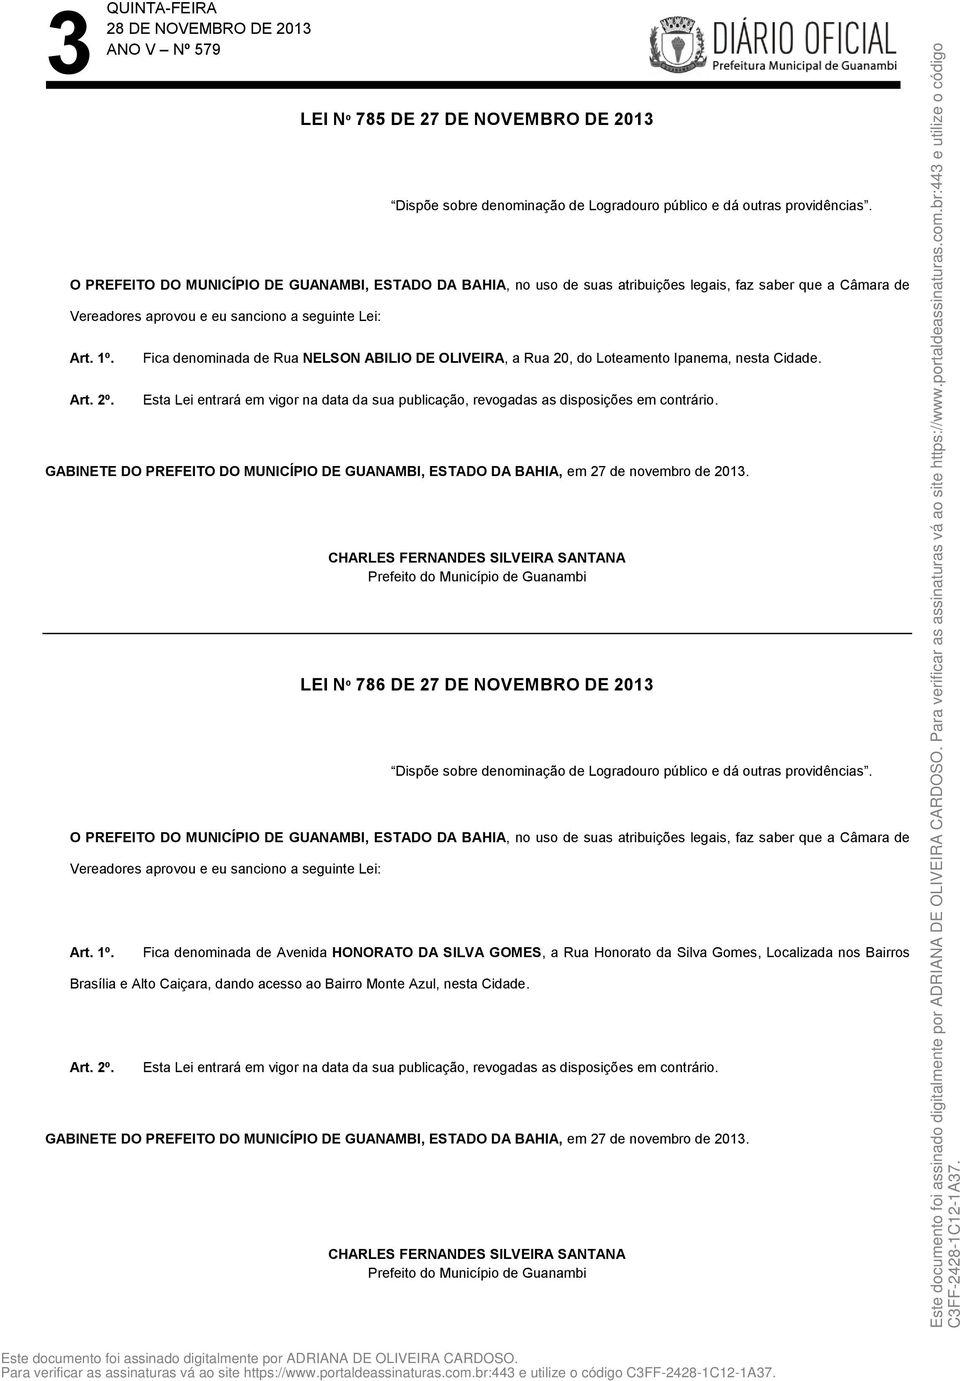 LEI Nº 786 DE 27 DE NOVEMBRO DE 2013 Dispõe sobre denominação de Logradouro público e dá outras providências. Art. 1º.